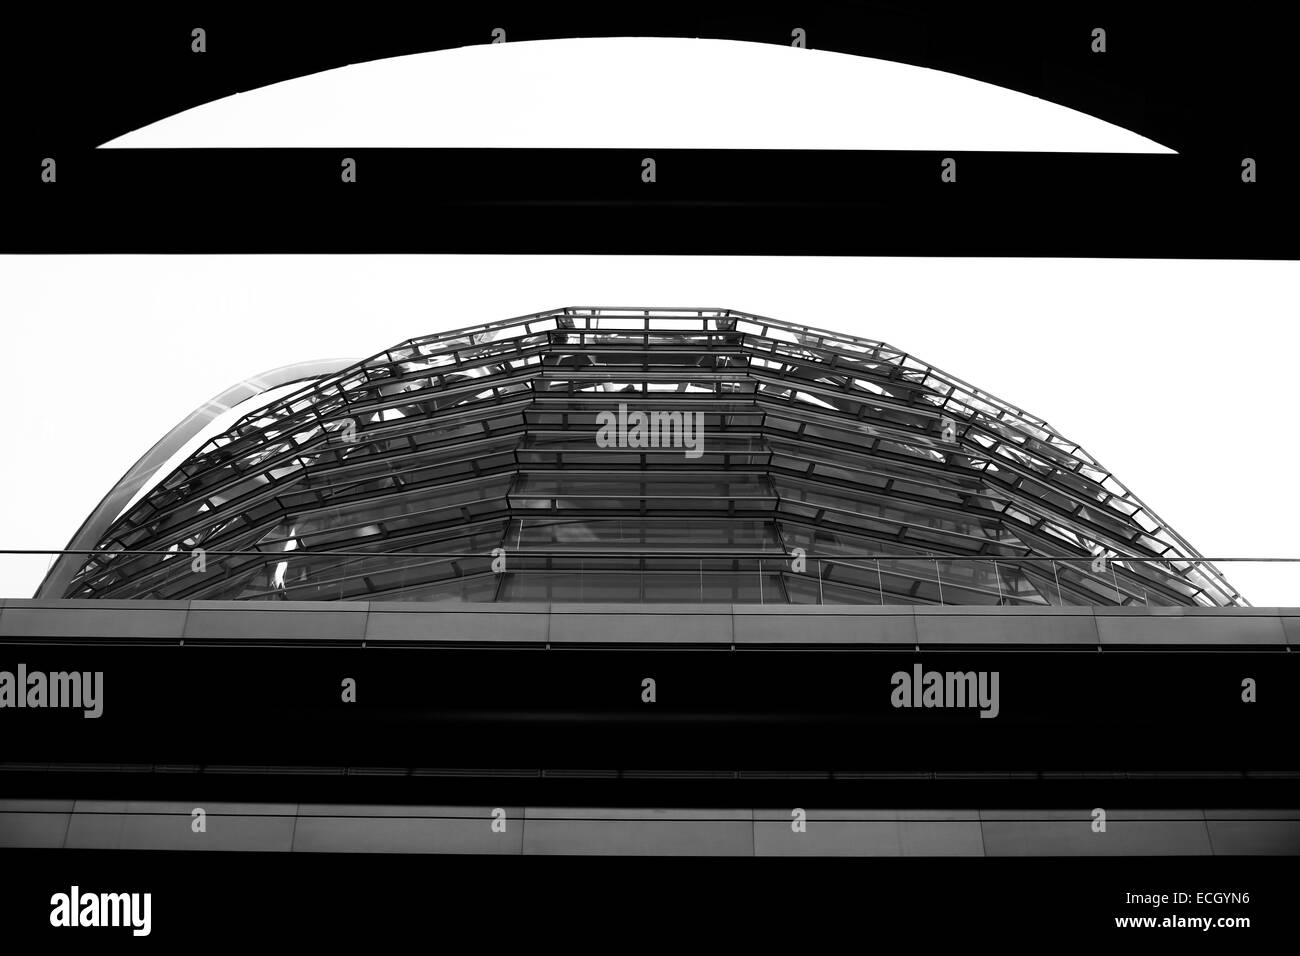 Blanco y negro edificio del Reichstag de Berlín el parlamento alemán domo Foto de stock